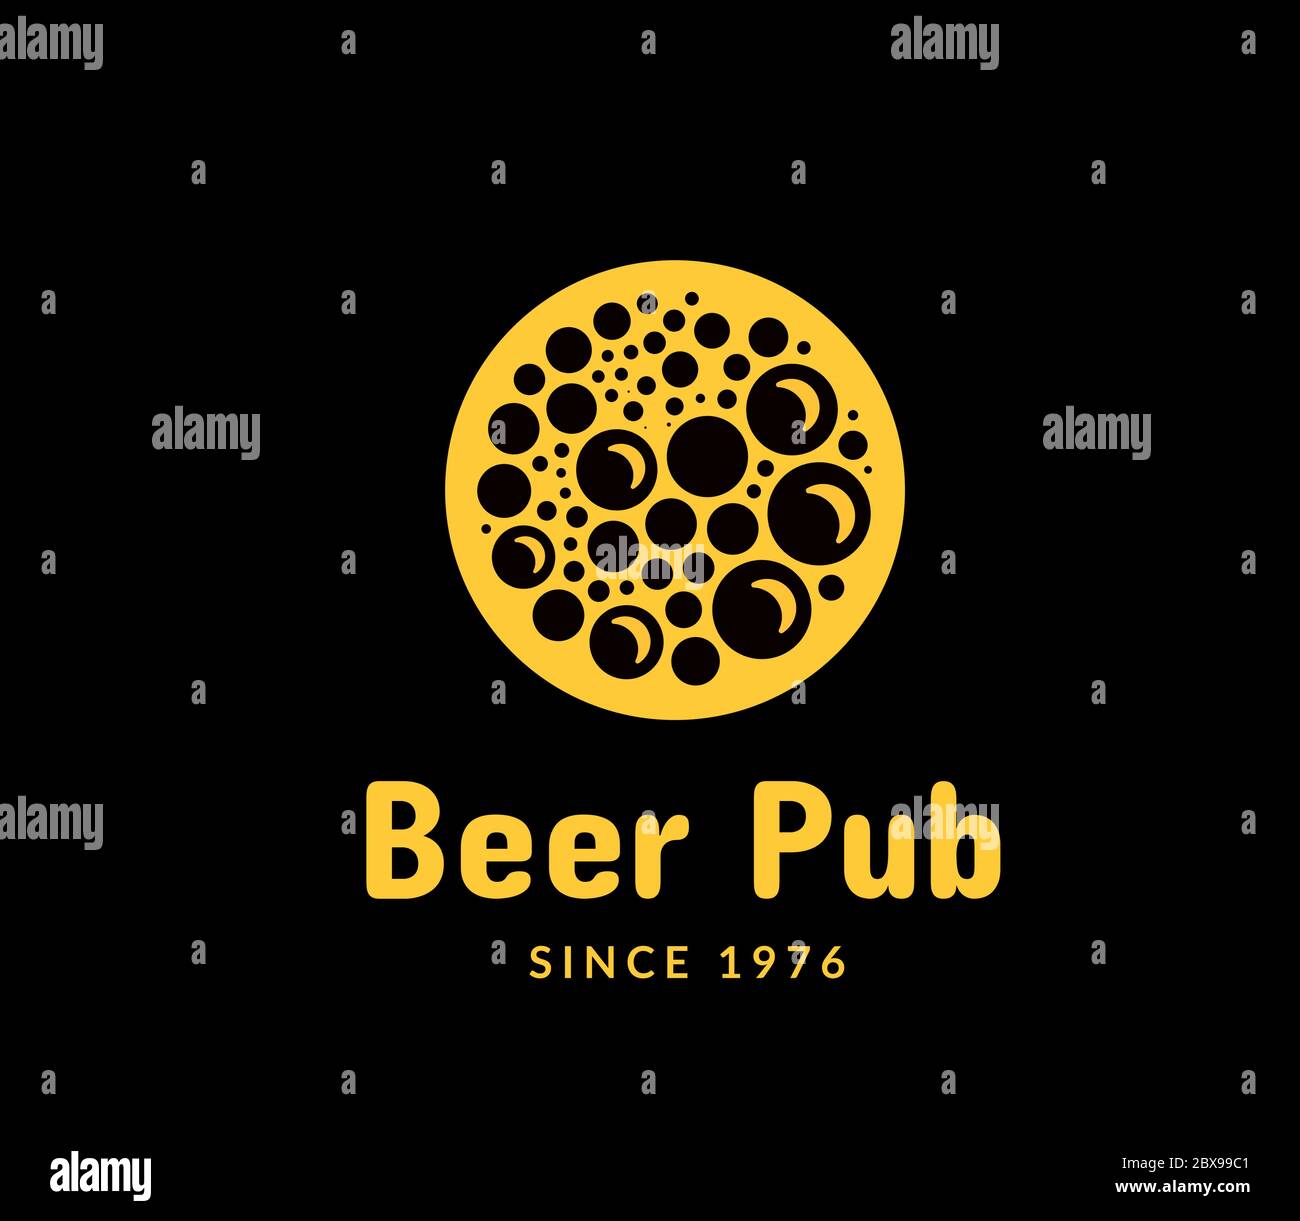 Beer pub logo vector illustration Stock Vector